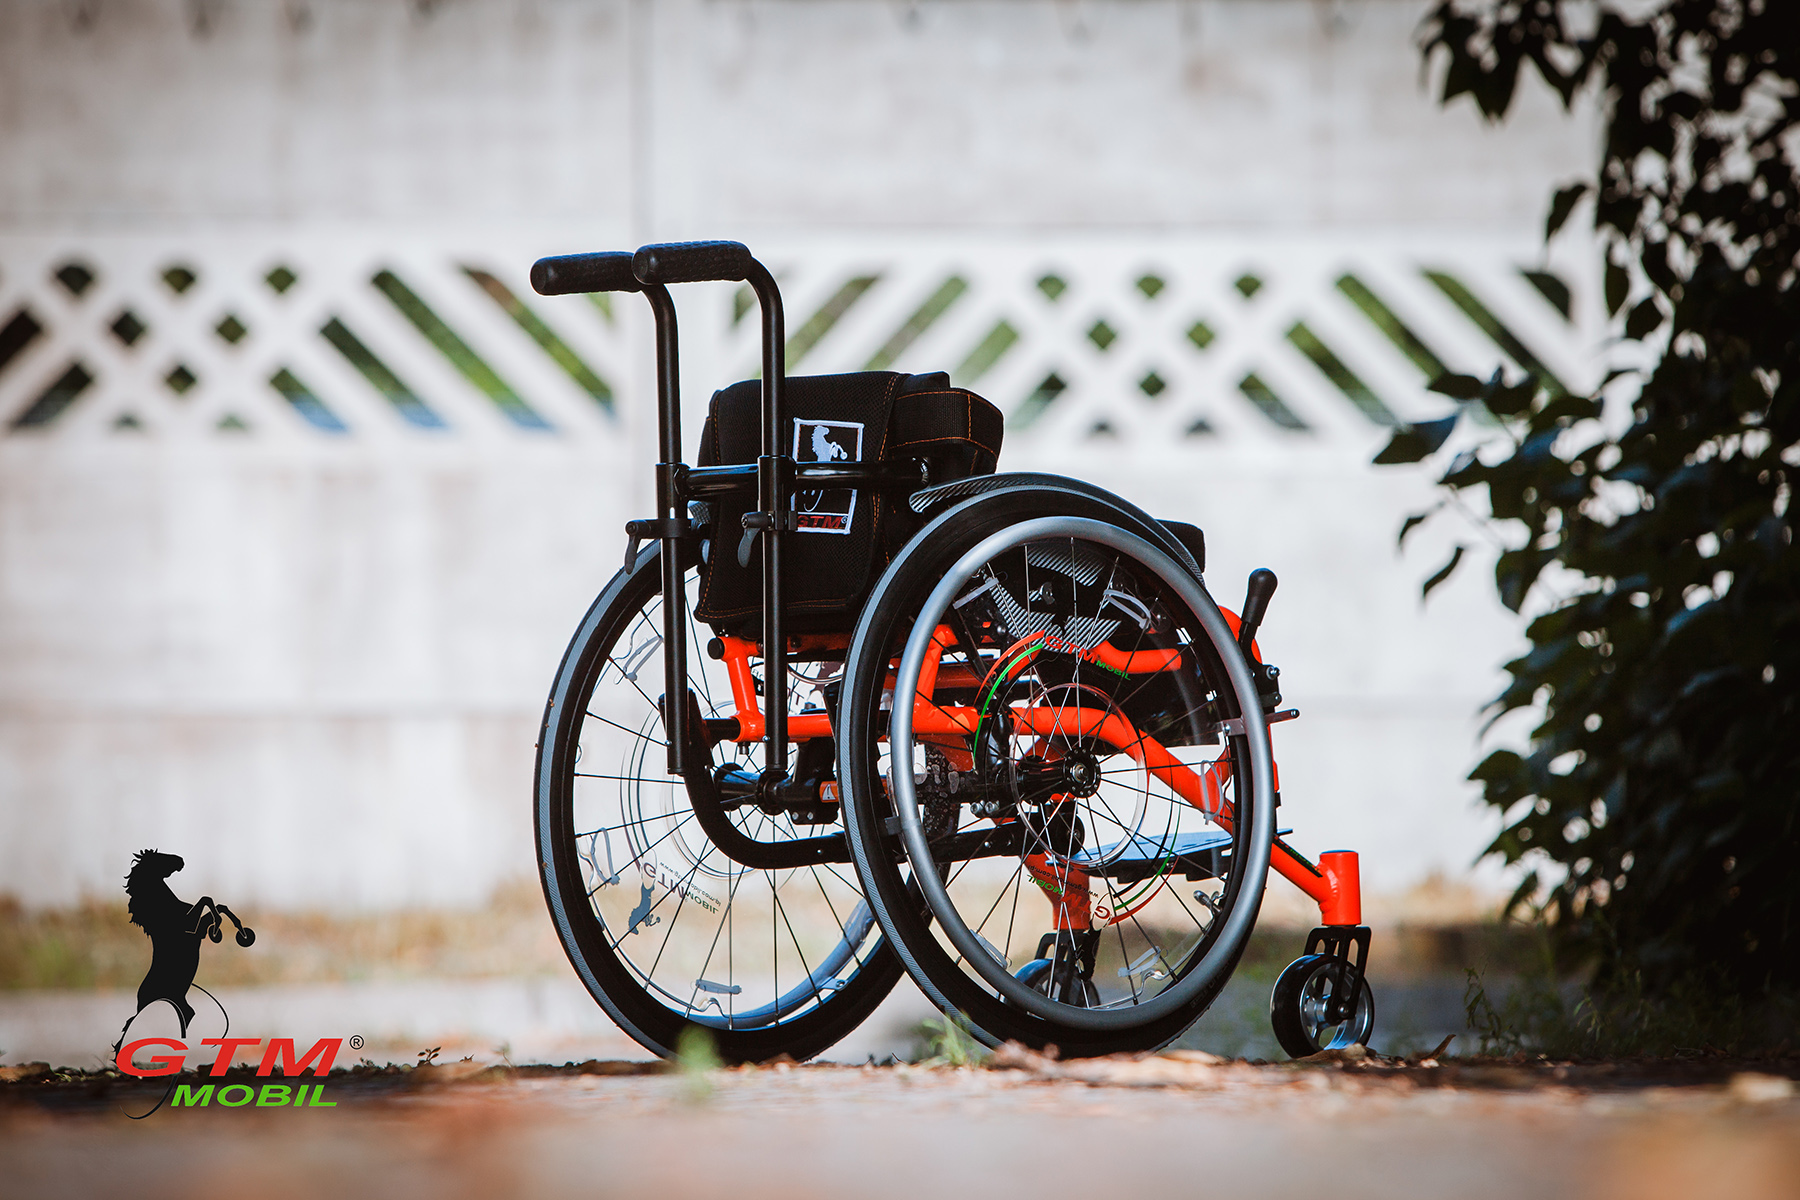 Aktywny wózek inwalidzki dla dzieci GTM JUNIOR